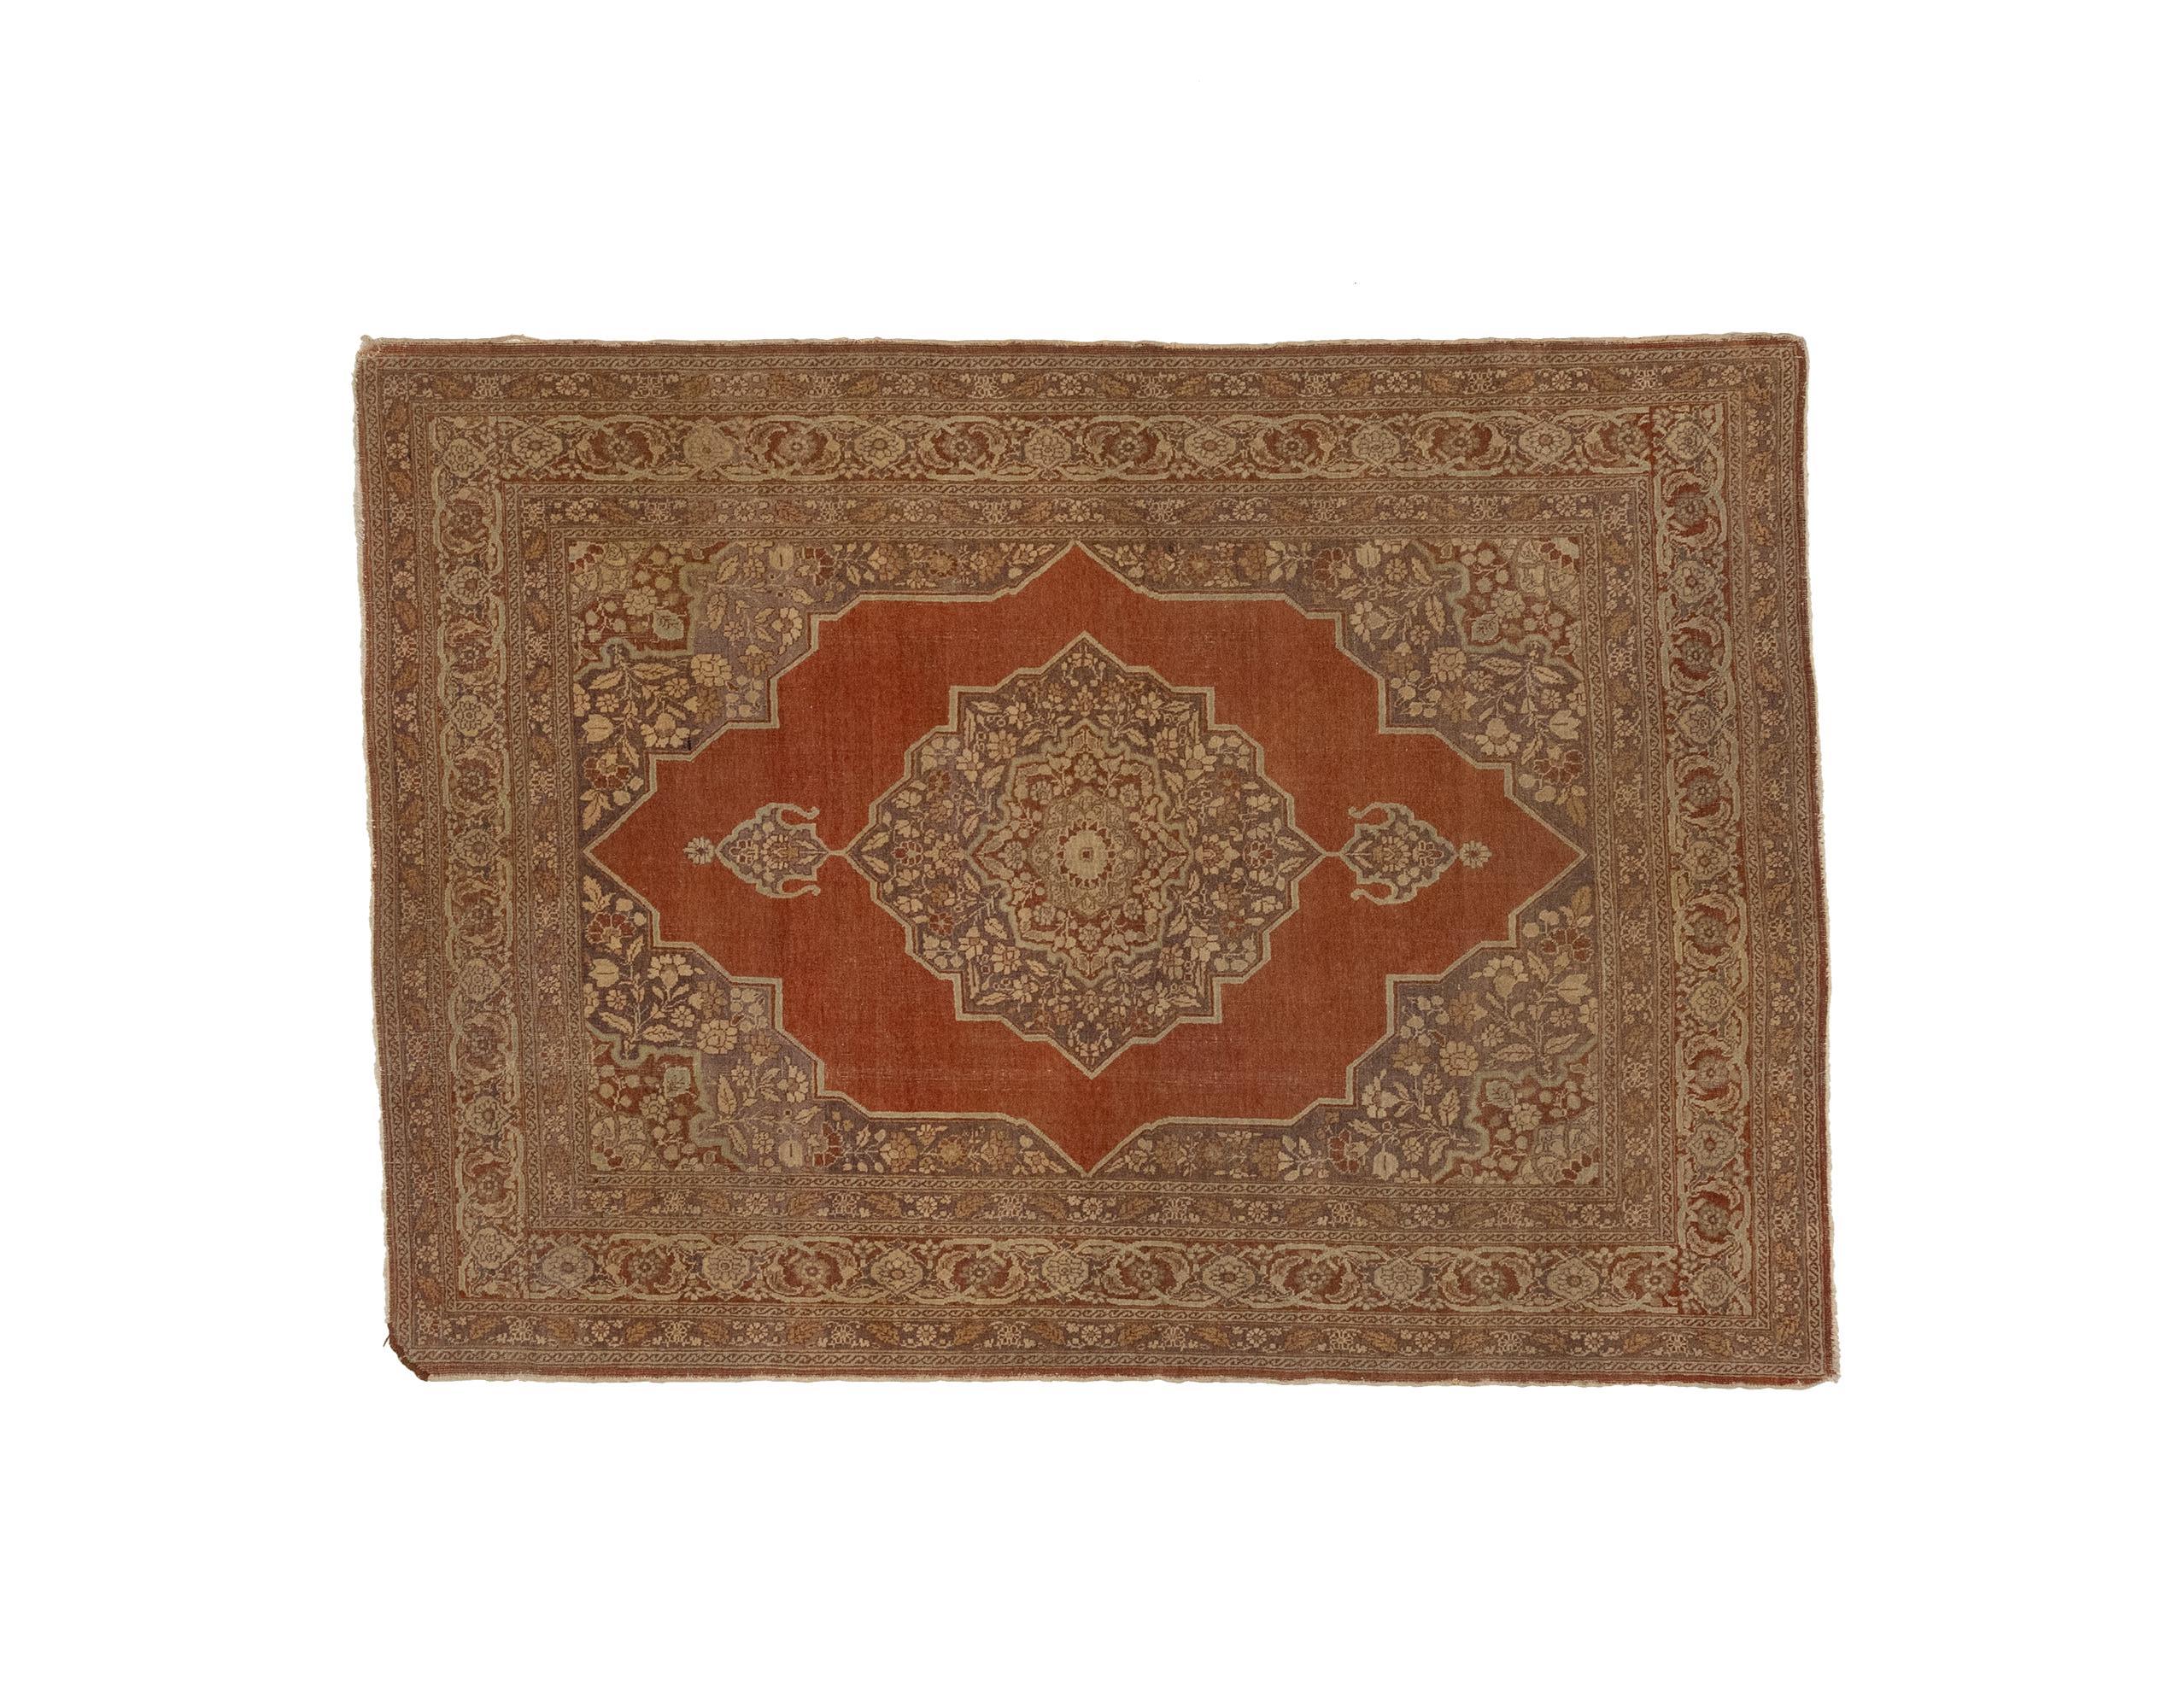 Der antike Medaillonteppich ist ein beeindruckendes Stück Handwerkskunst aus den 1880er Jahren. Es handelt sich um einen handgewebten Teppich, was seine Authentizität und seinen Charme unterstreicht. Der Teppich zeichnet sich durch ein fesselndes